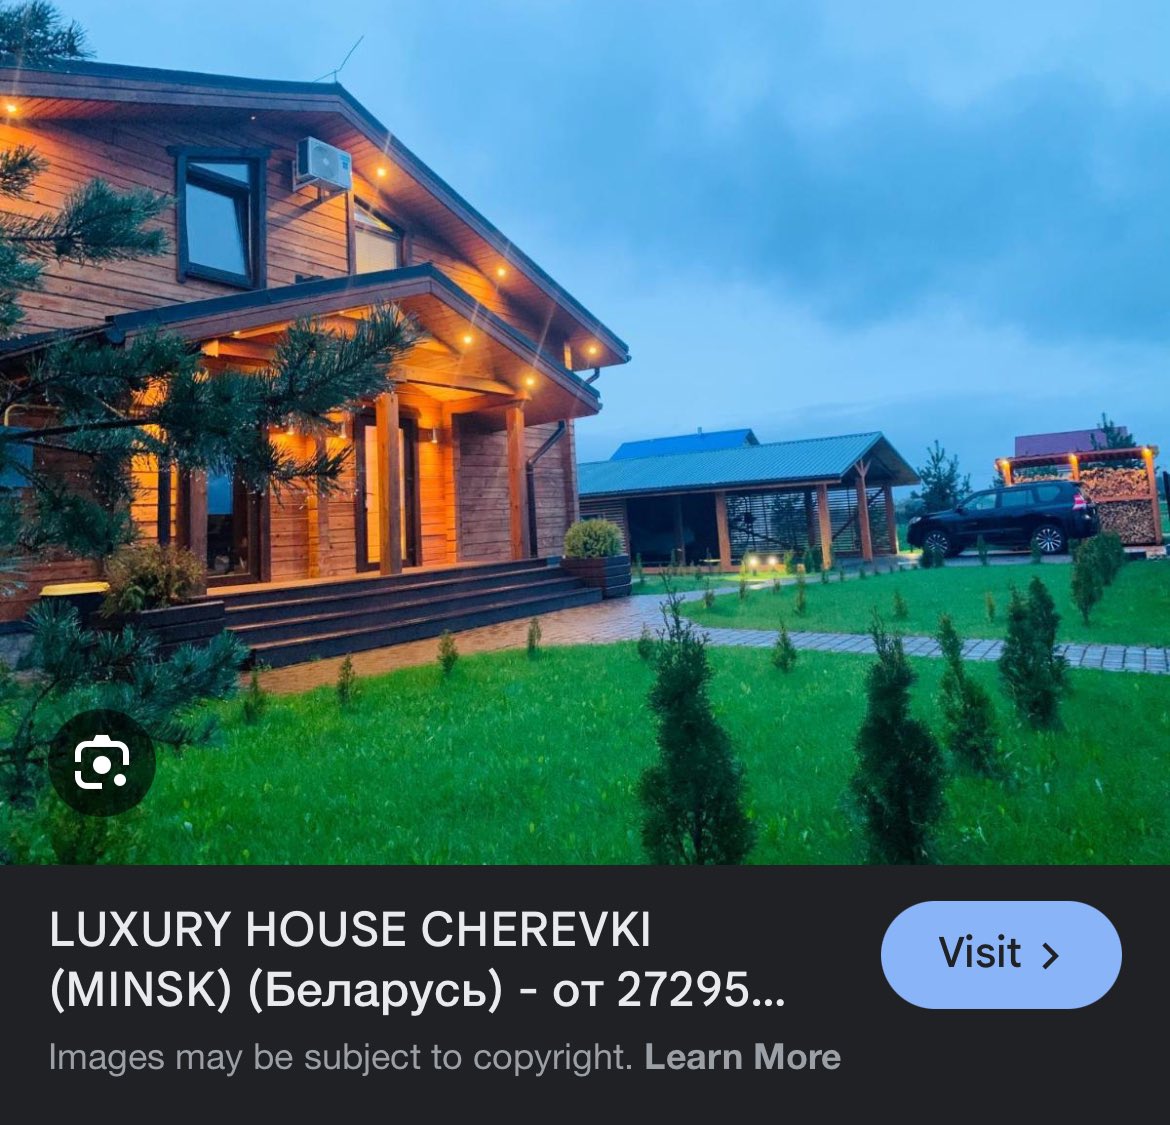 Luksusowe domy pod Mińskiem (Białoruś), za około $50.000.
I to jest ok.
Dywersyfikujcie się majątkowo.